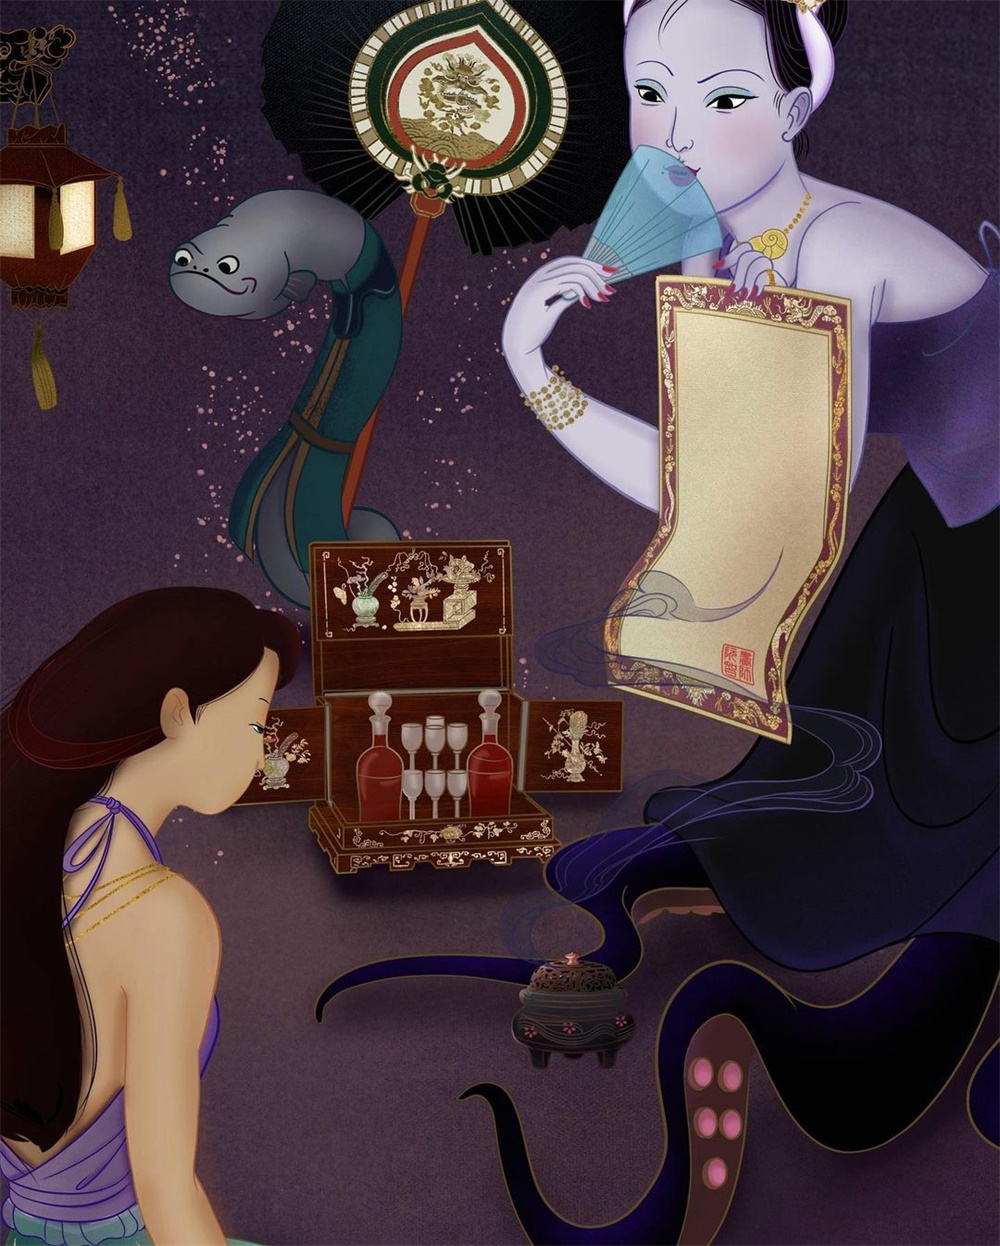 越南版「迪士尼公主与恶棍」主题插画